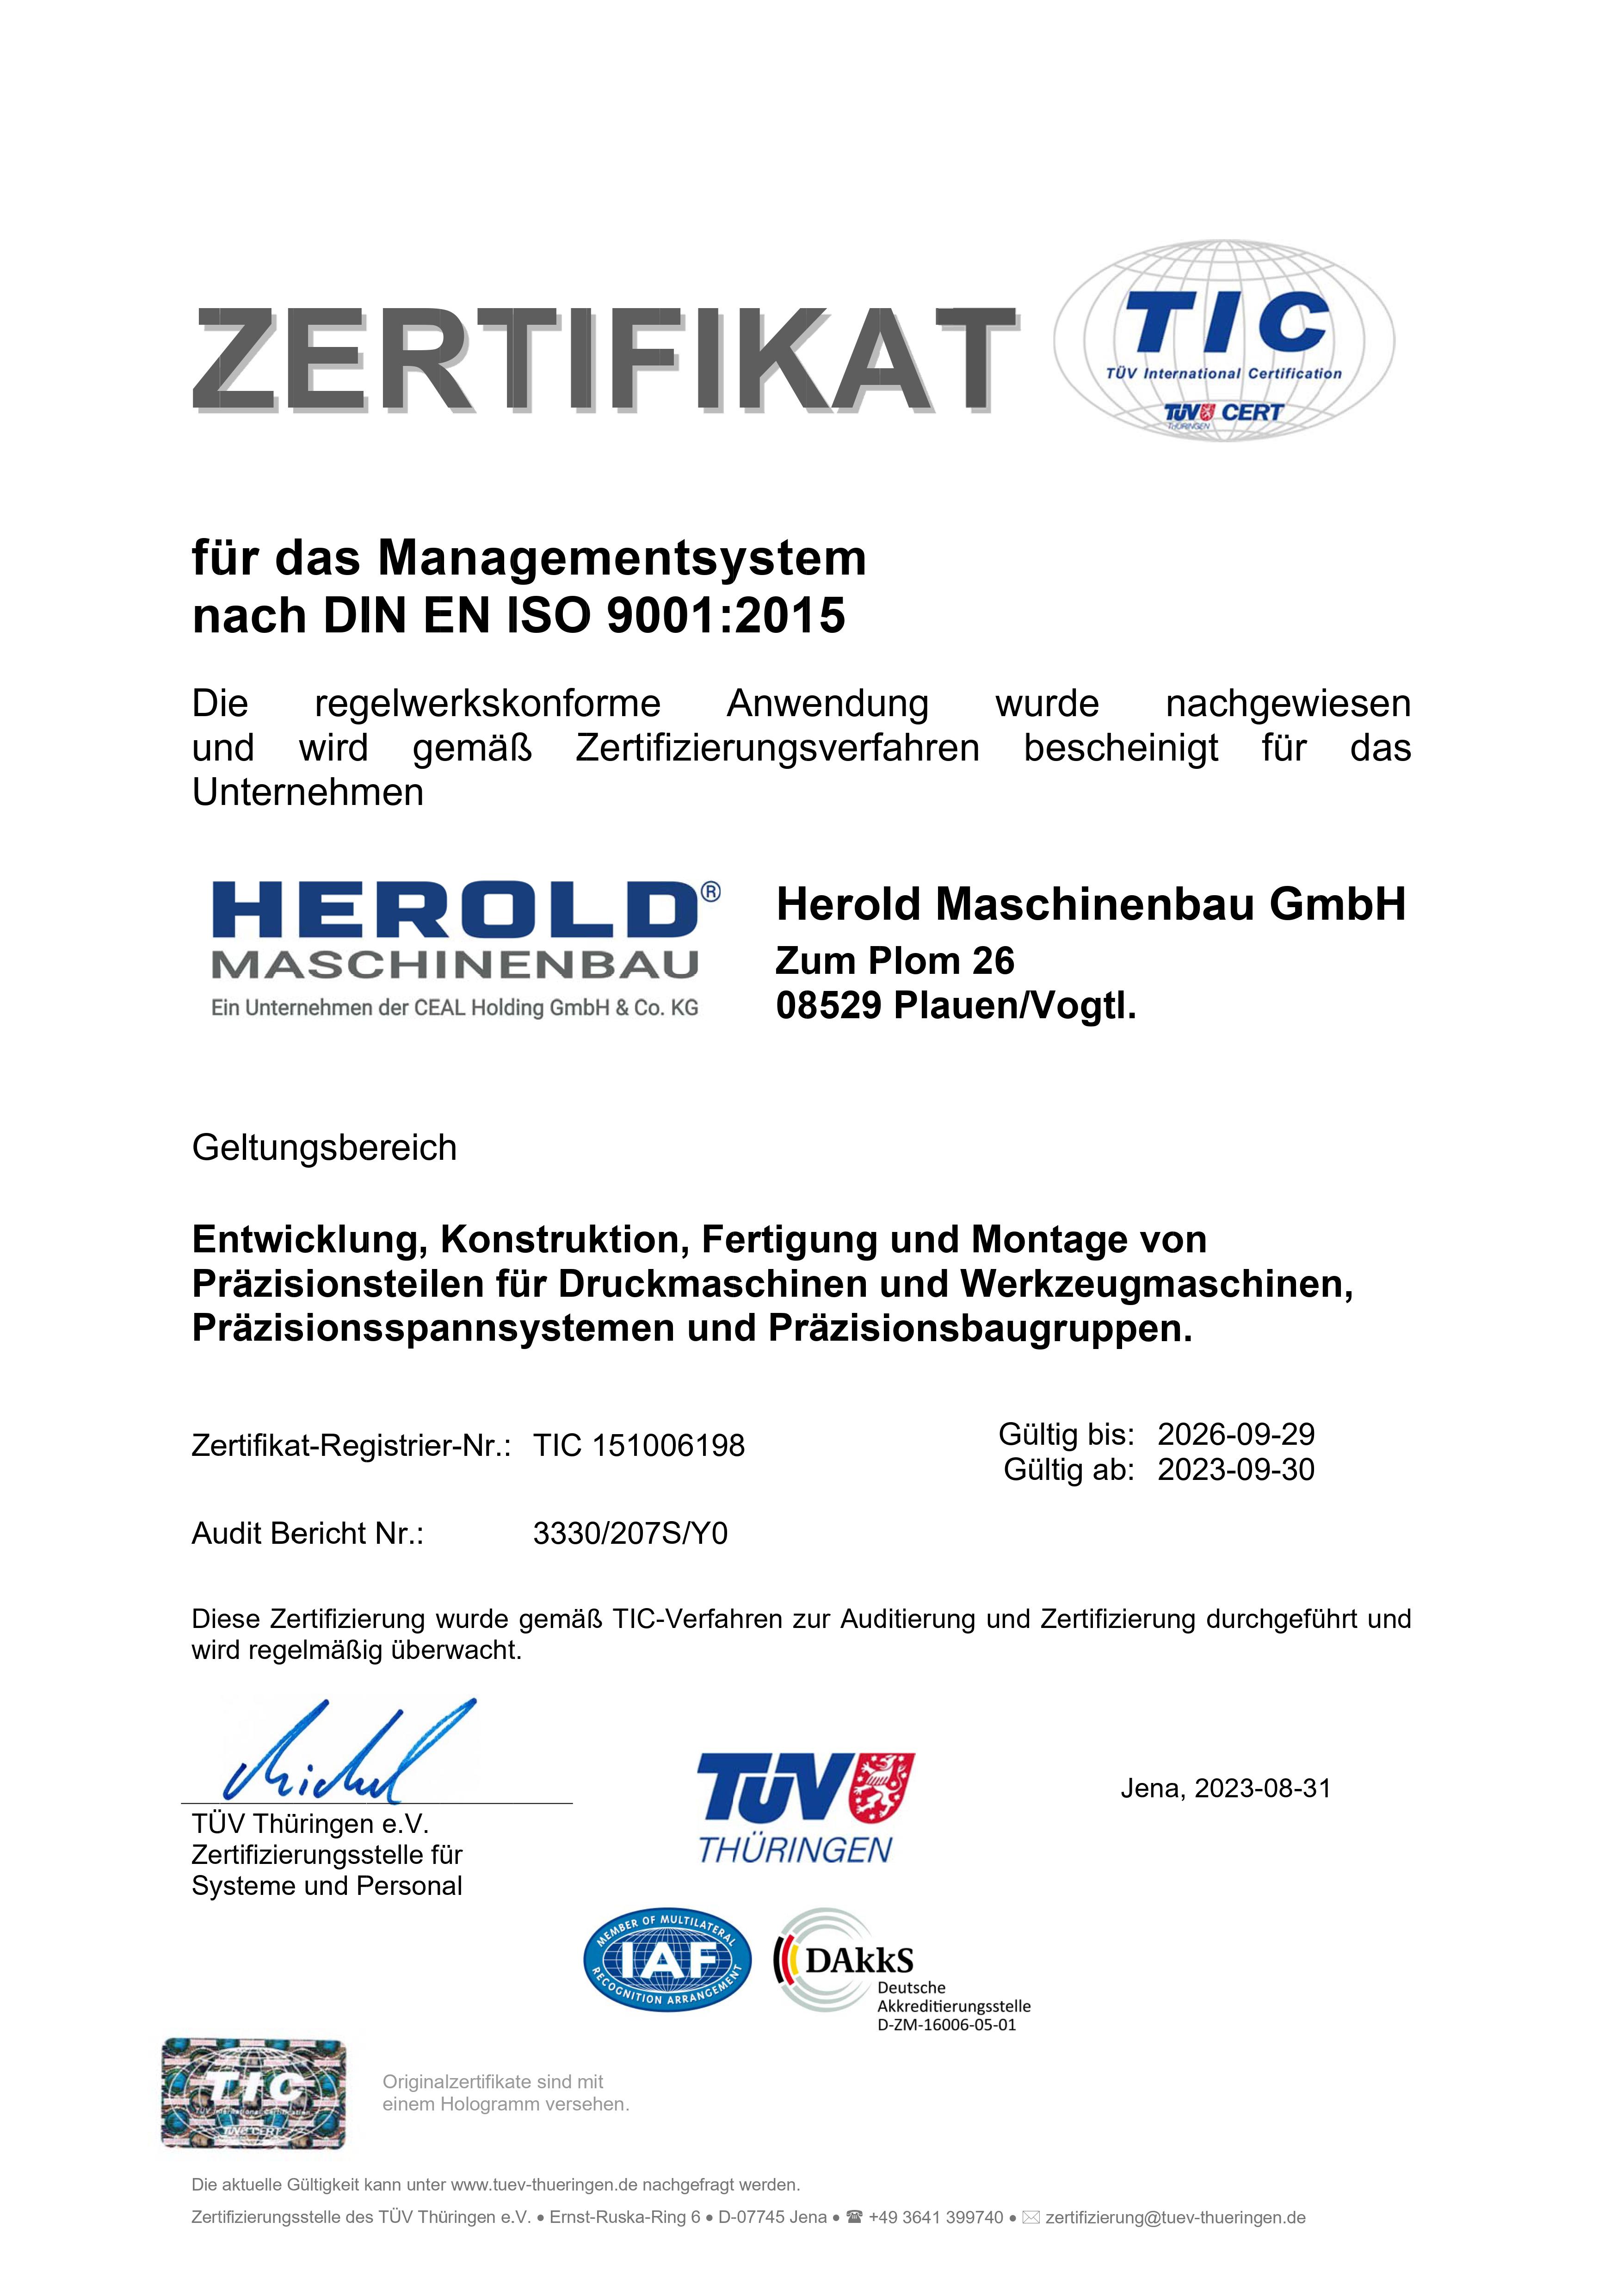 Zertifikat DIN EN ISO 9001:2008